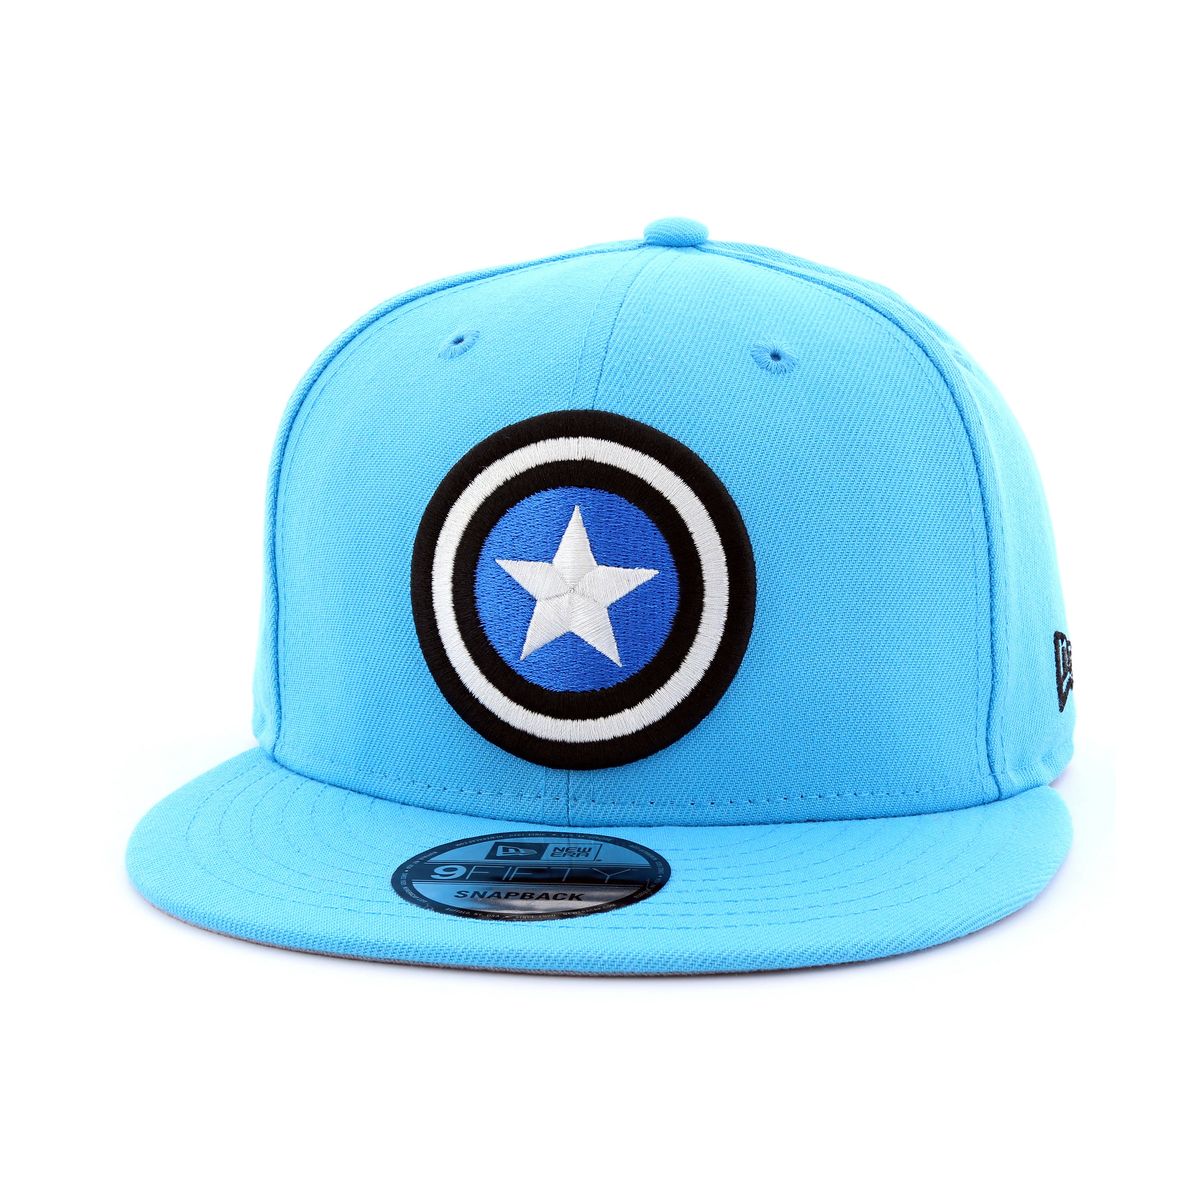 New Era Captain America Men's Cap Blue